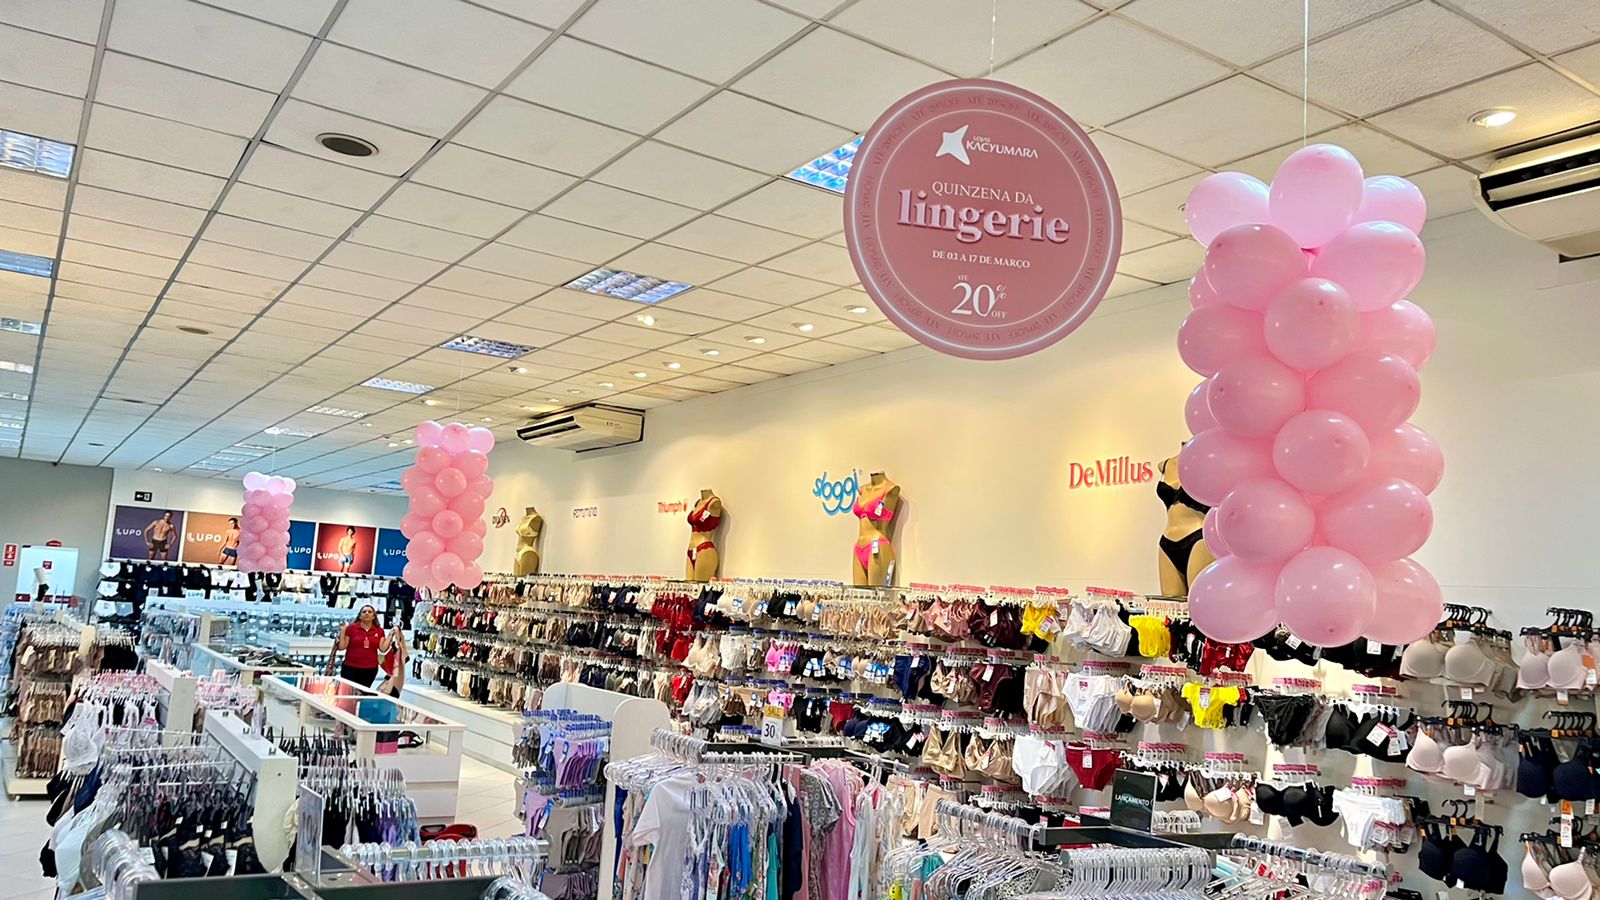 lojas kacyumara promove sua tradicional quinzena da lingerie com itens de até 20% de desconto (2)